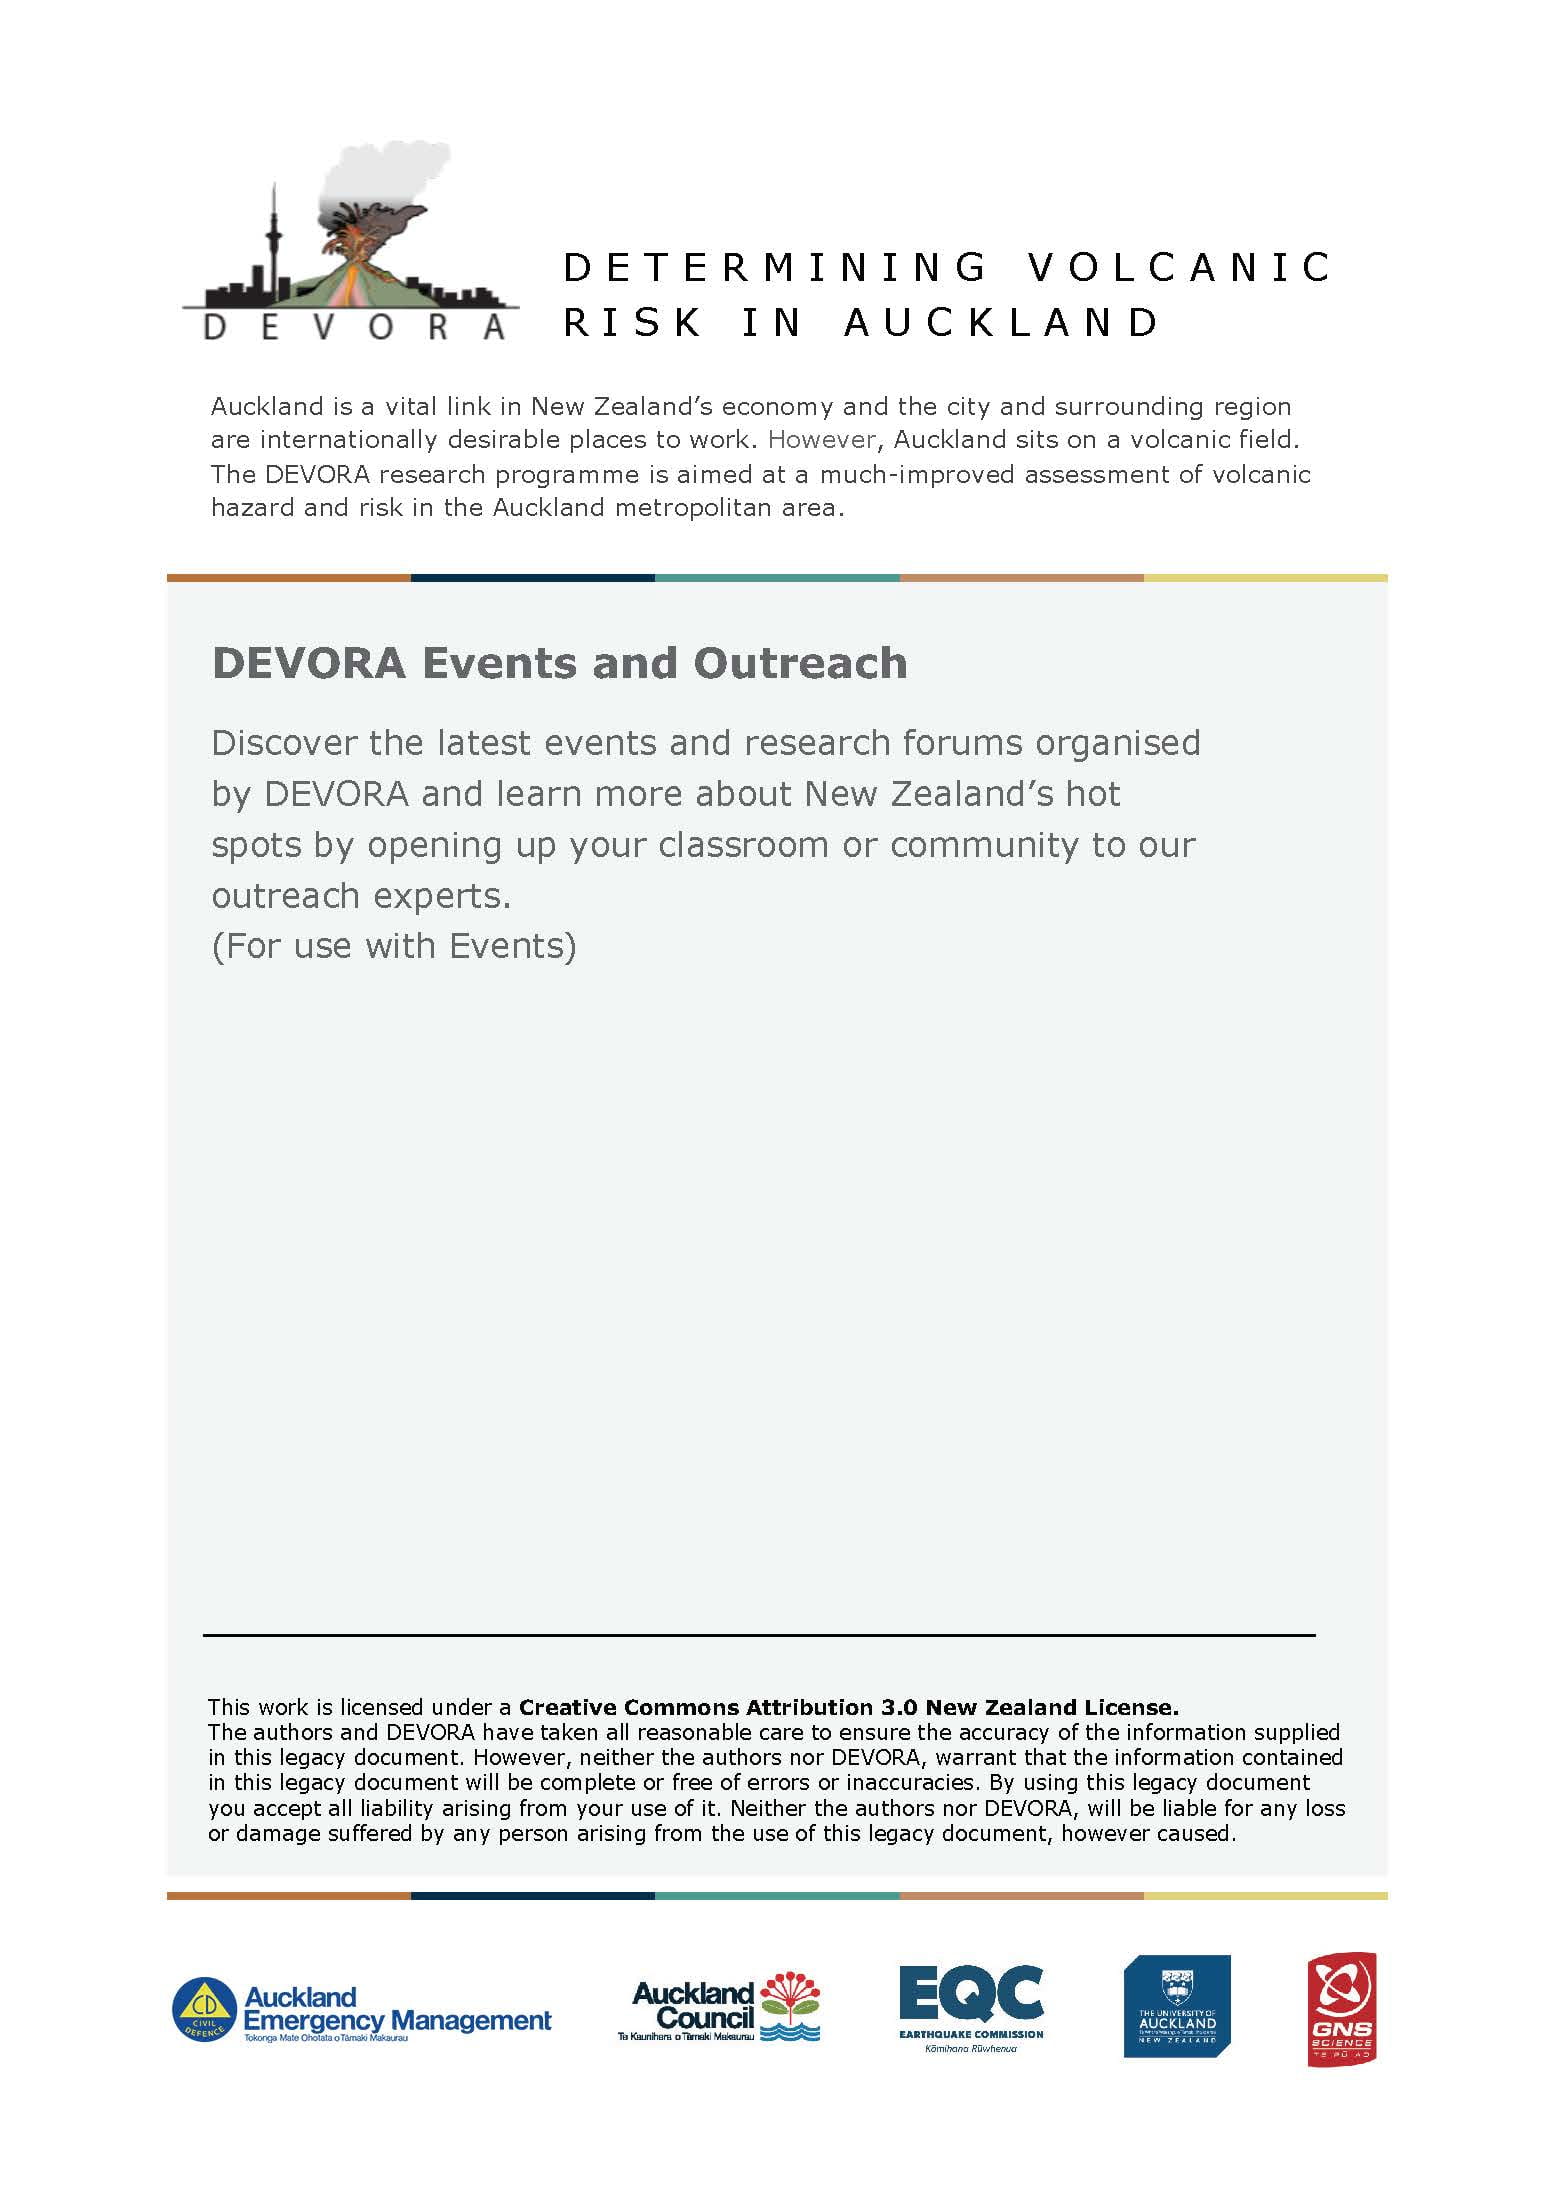 DEVORA Events and Outreach Cover